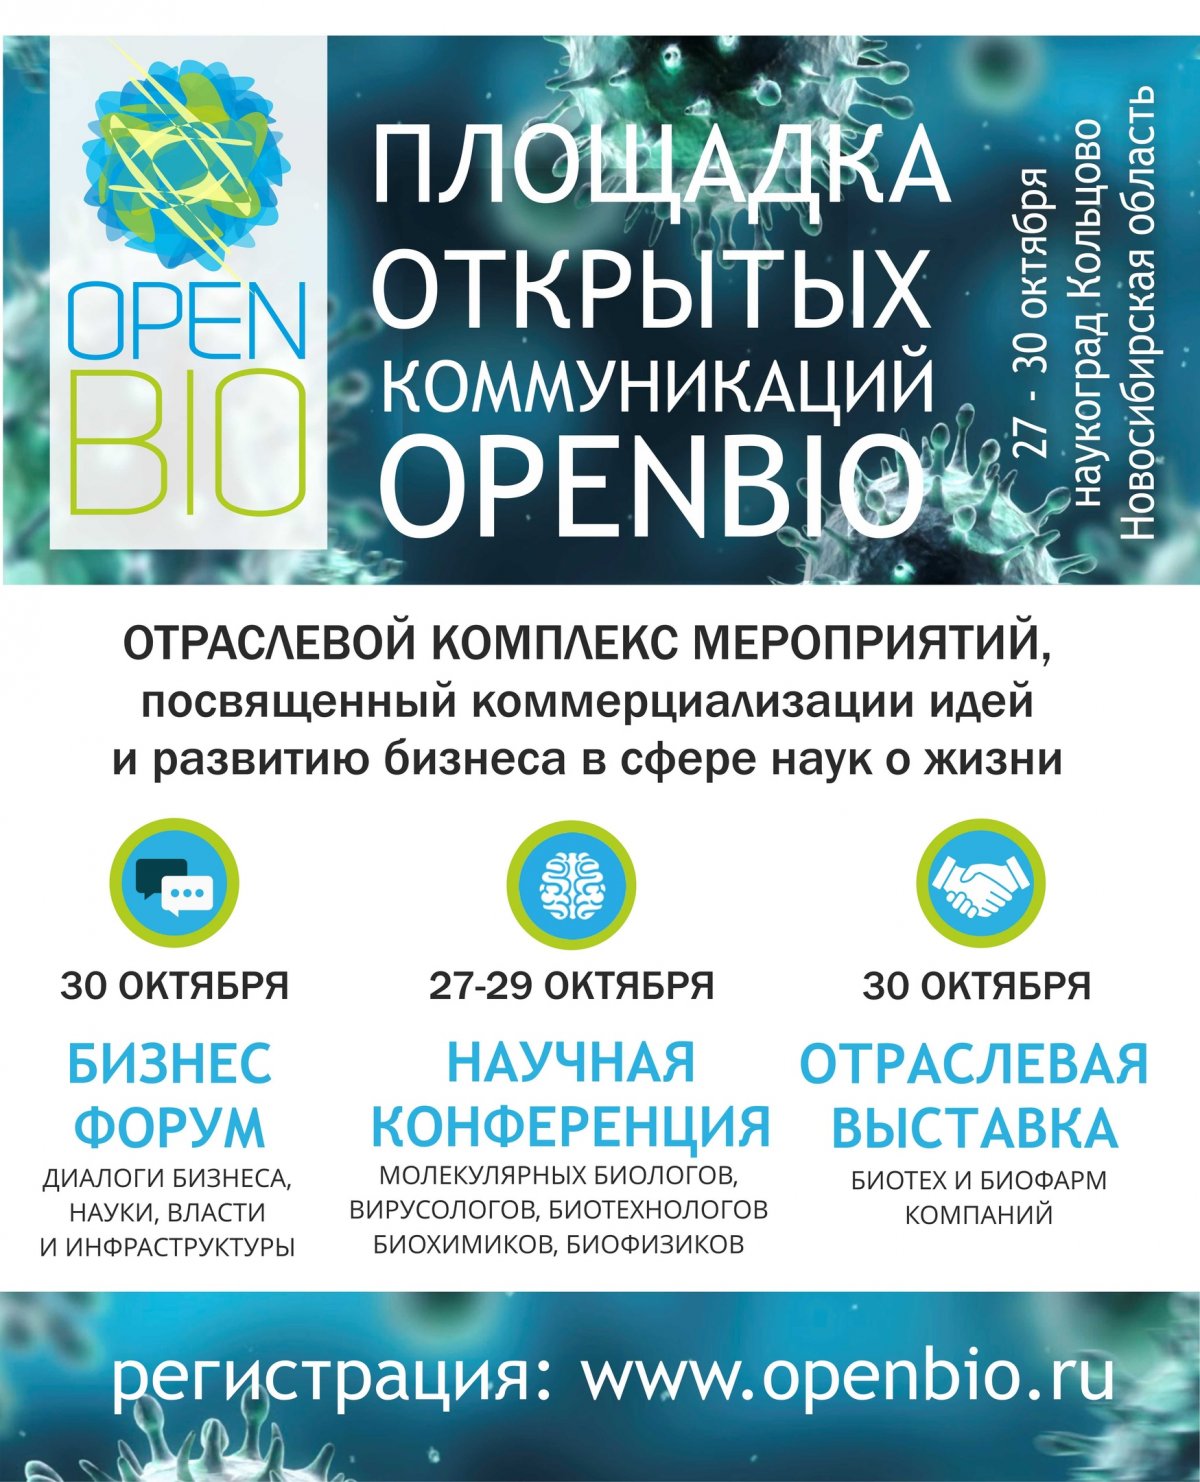 VII международная научная конференция молодых ученых: вирусологов, биотехнологов, молекулярных биологов и биофизиков, которая состоится в наукограде Кольцово, центре биофармацевтического кластера Новосибирской области.